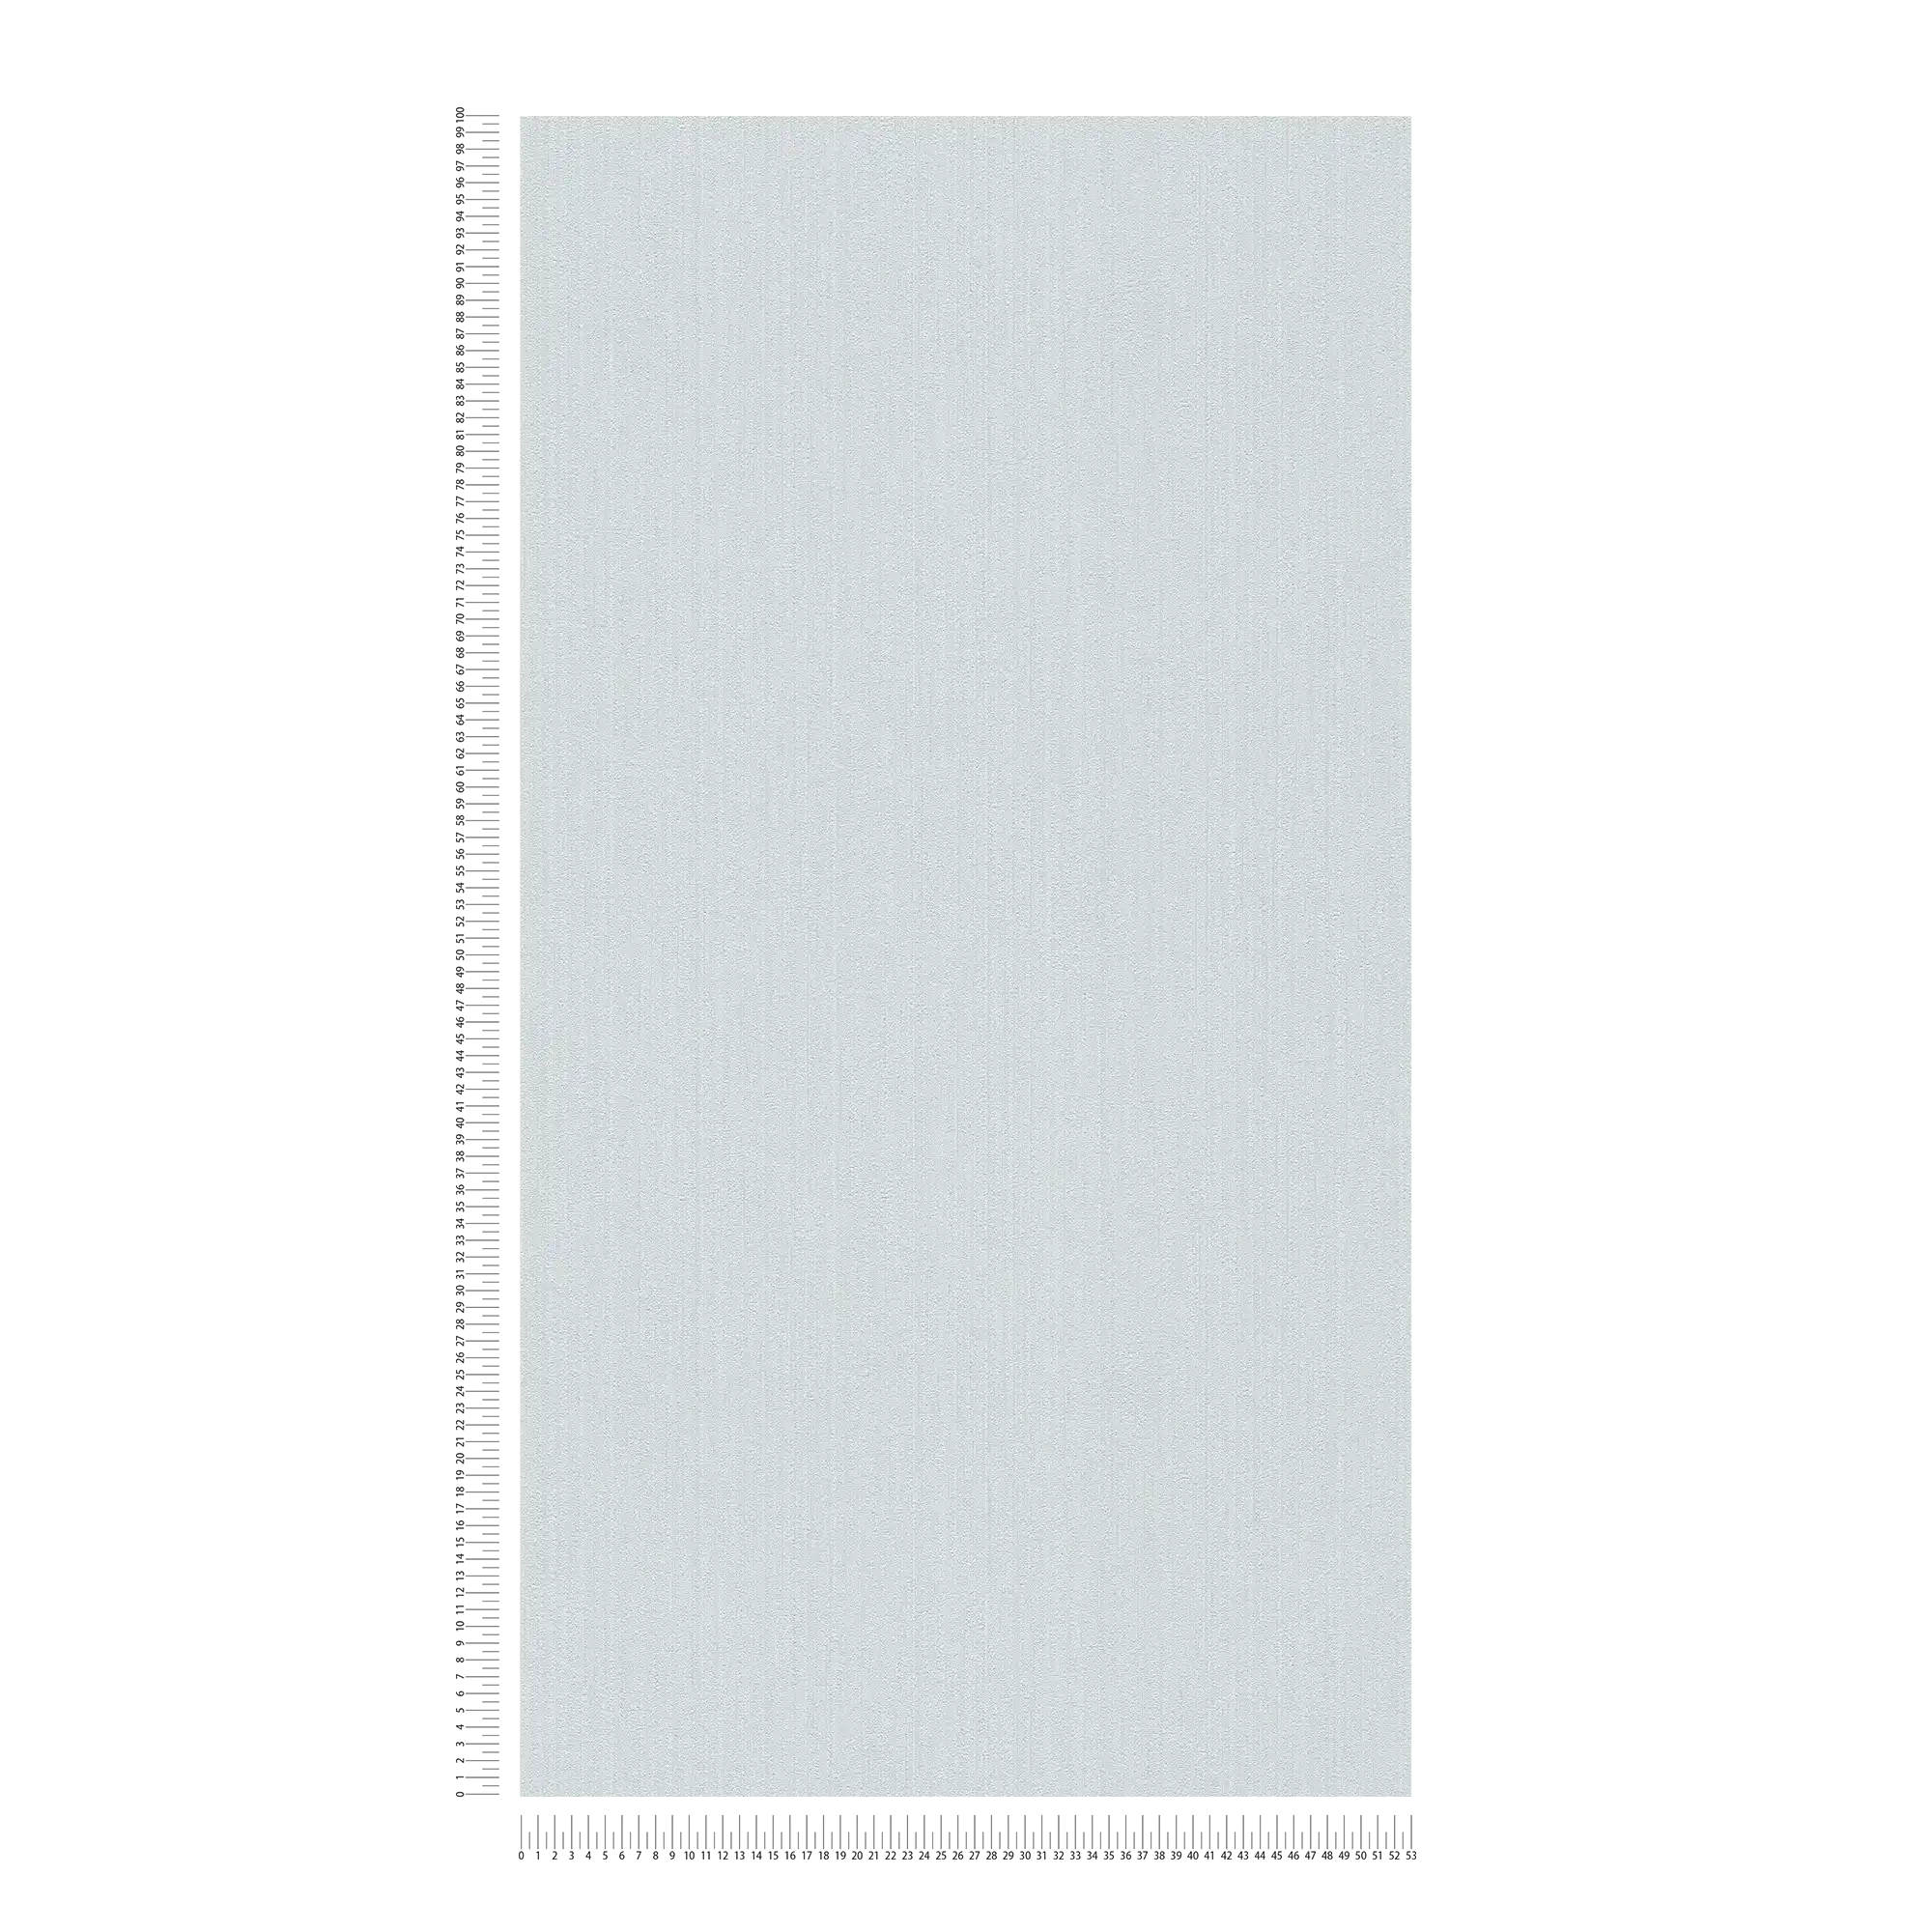             Papier peint gris-bleu clair, satiné avec effet structuré
        